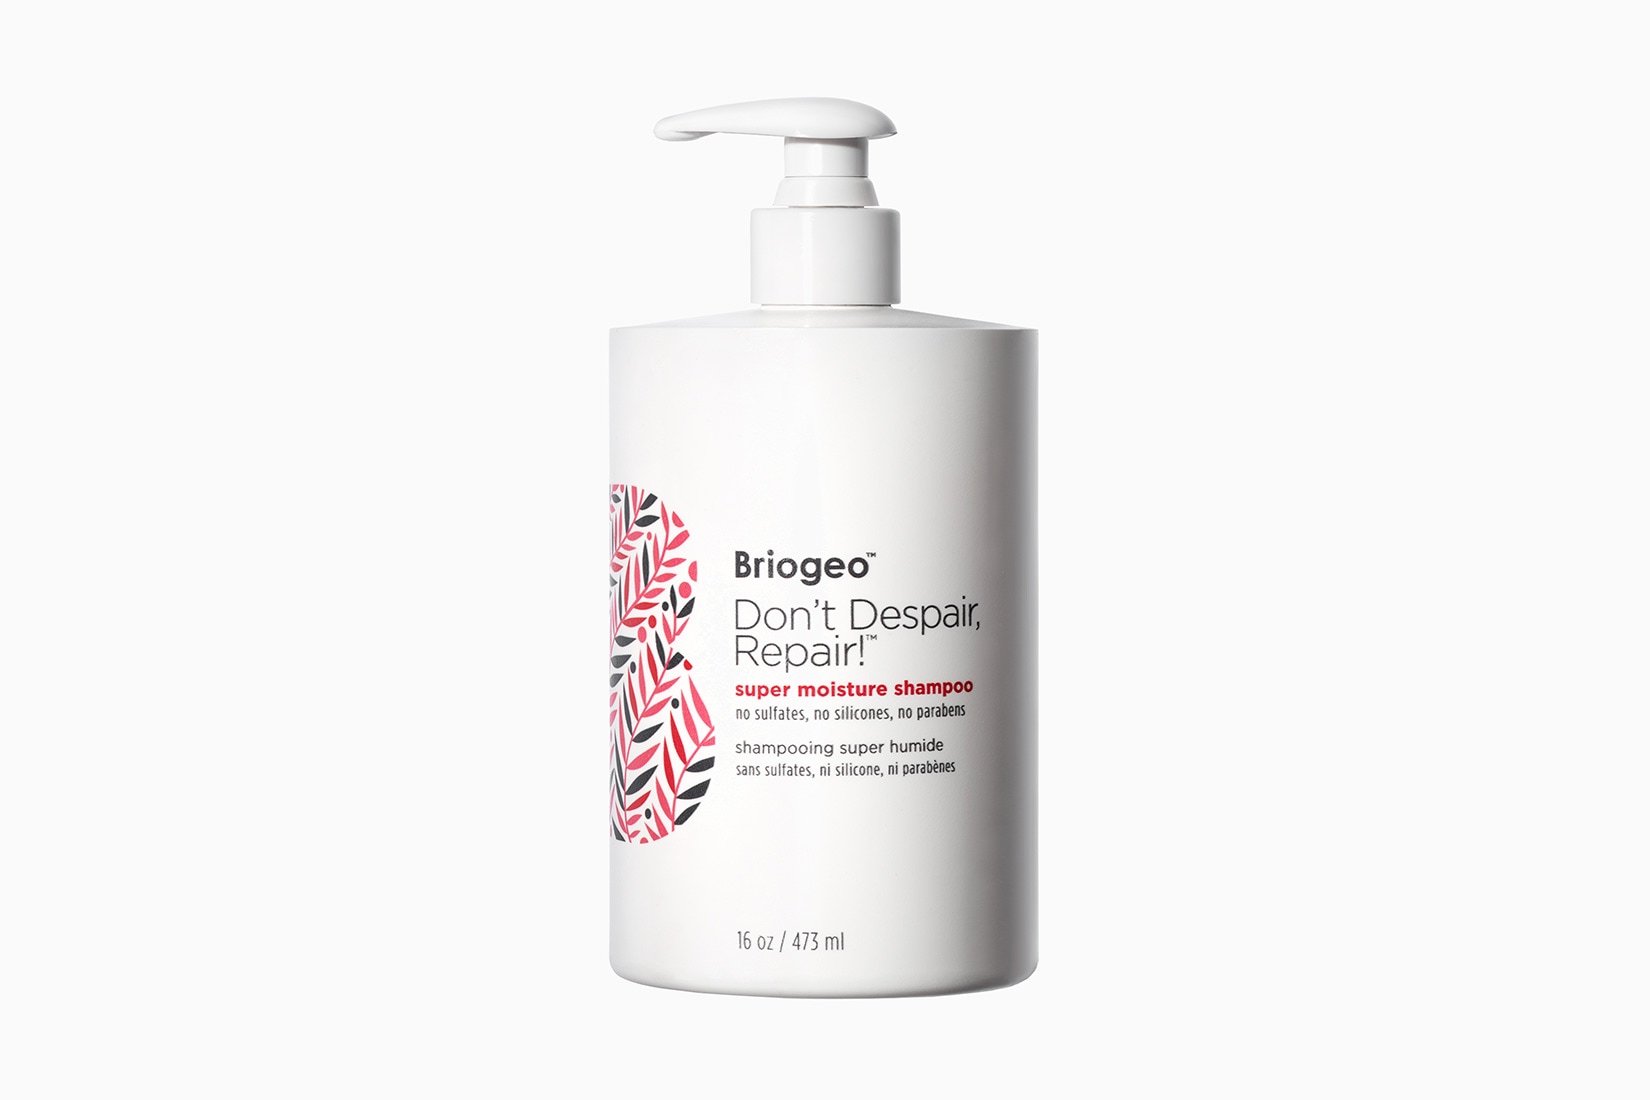 meilleurs shampoings femmes briogeo luxe digital